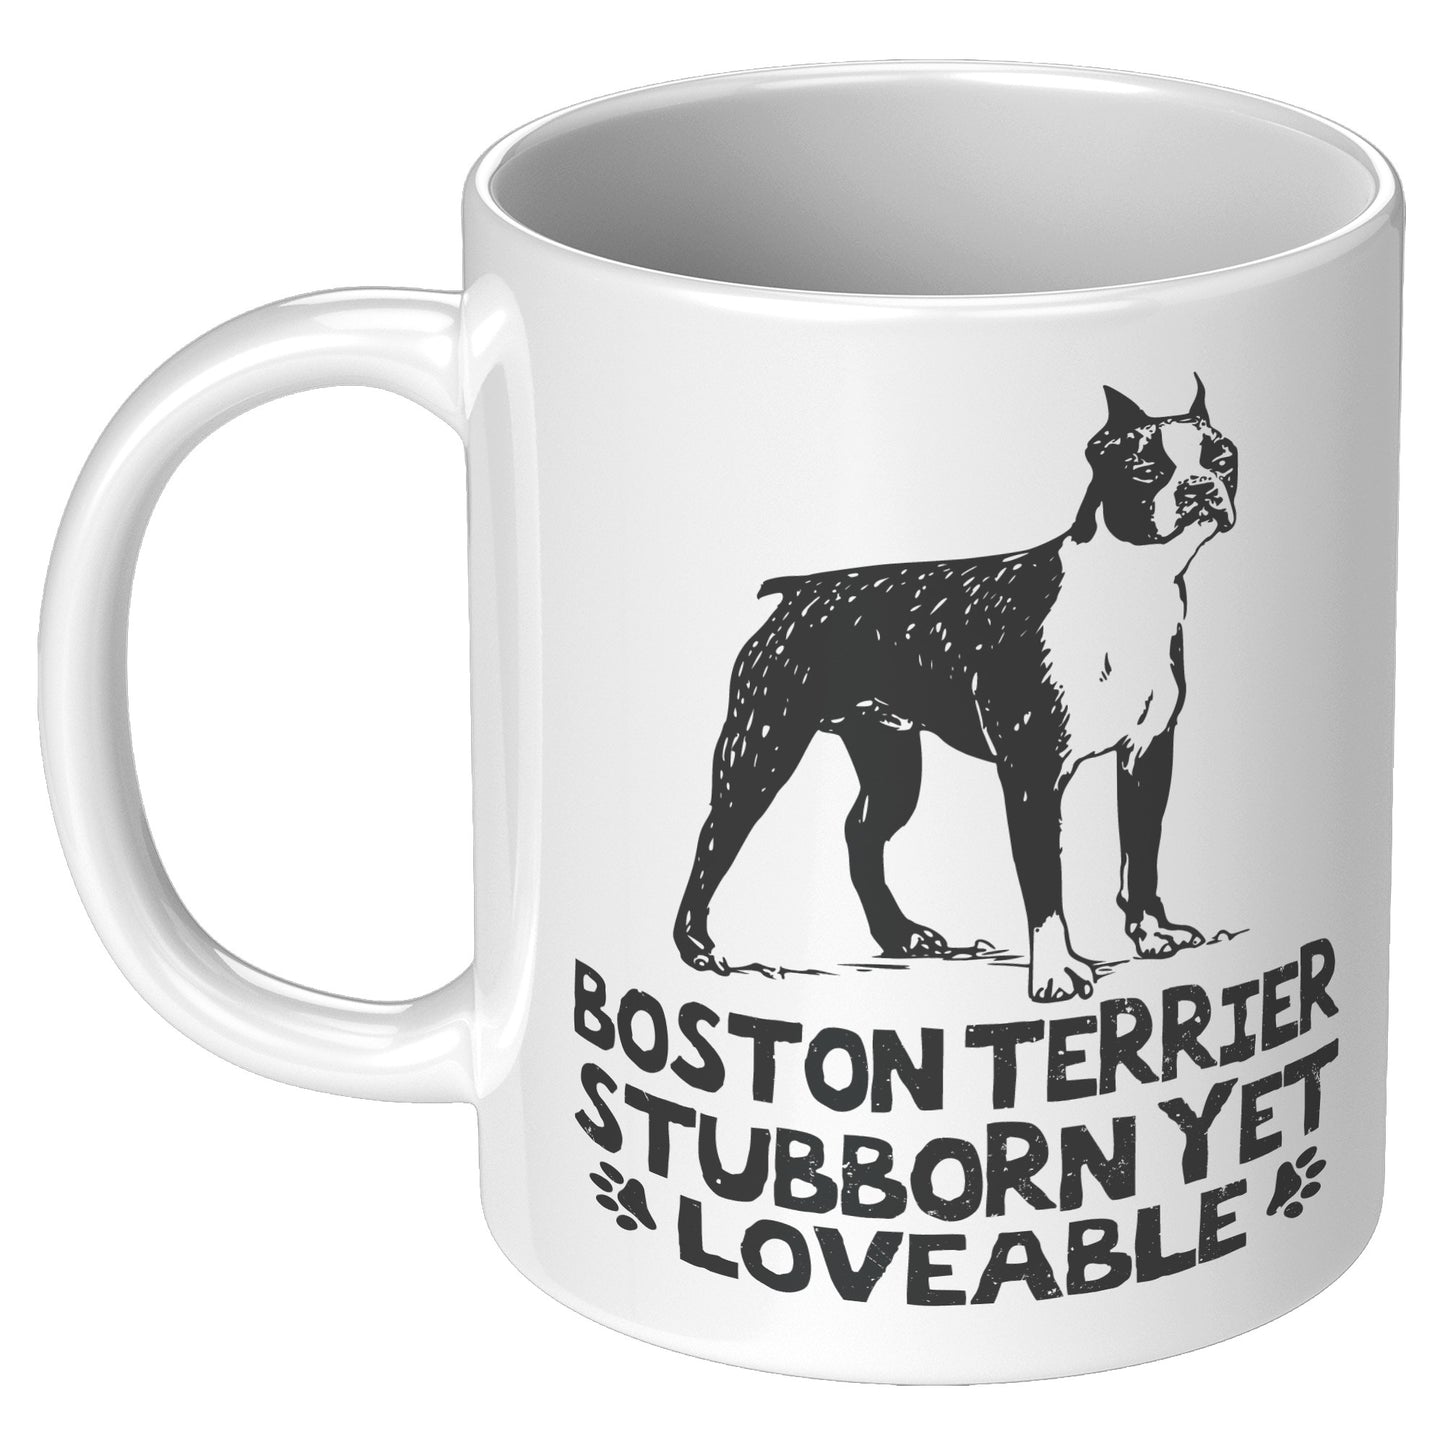 Stripes-Mug for Boston Terrier lovers